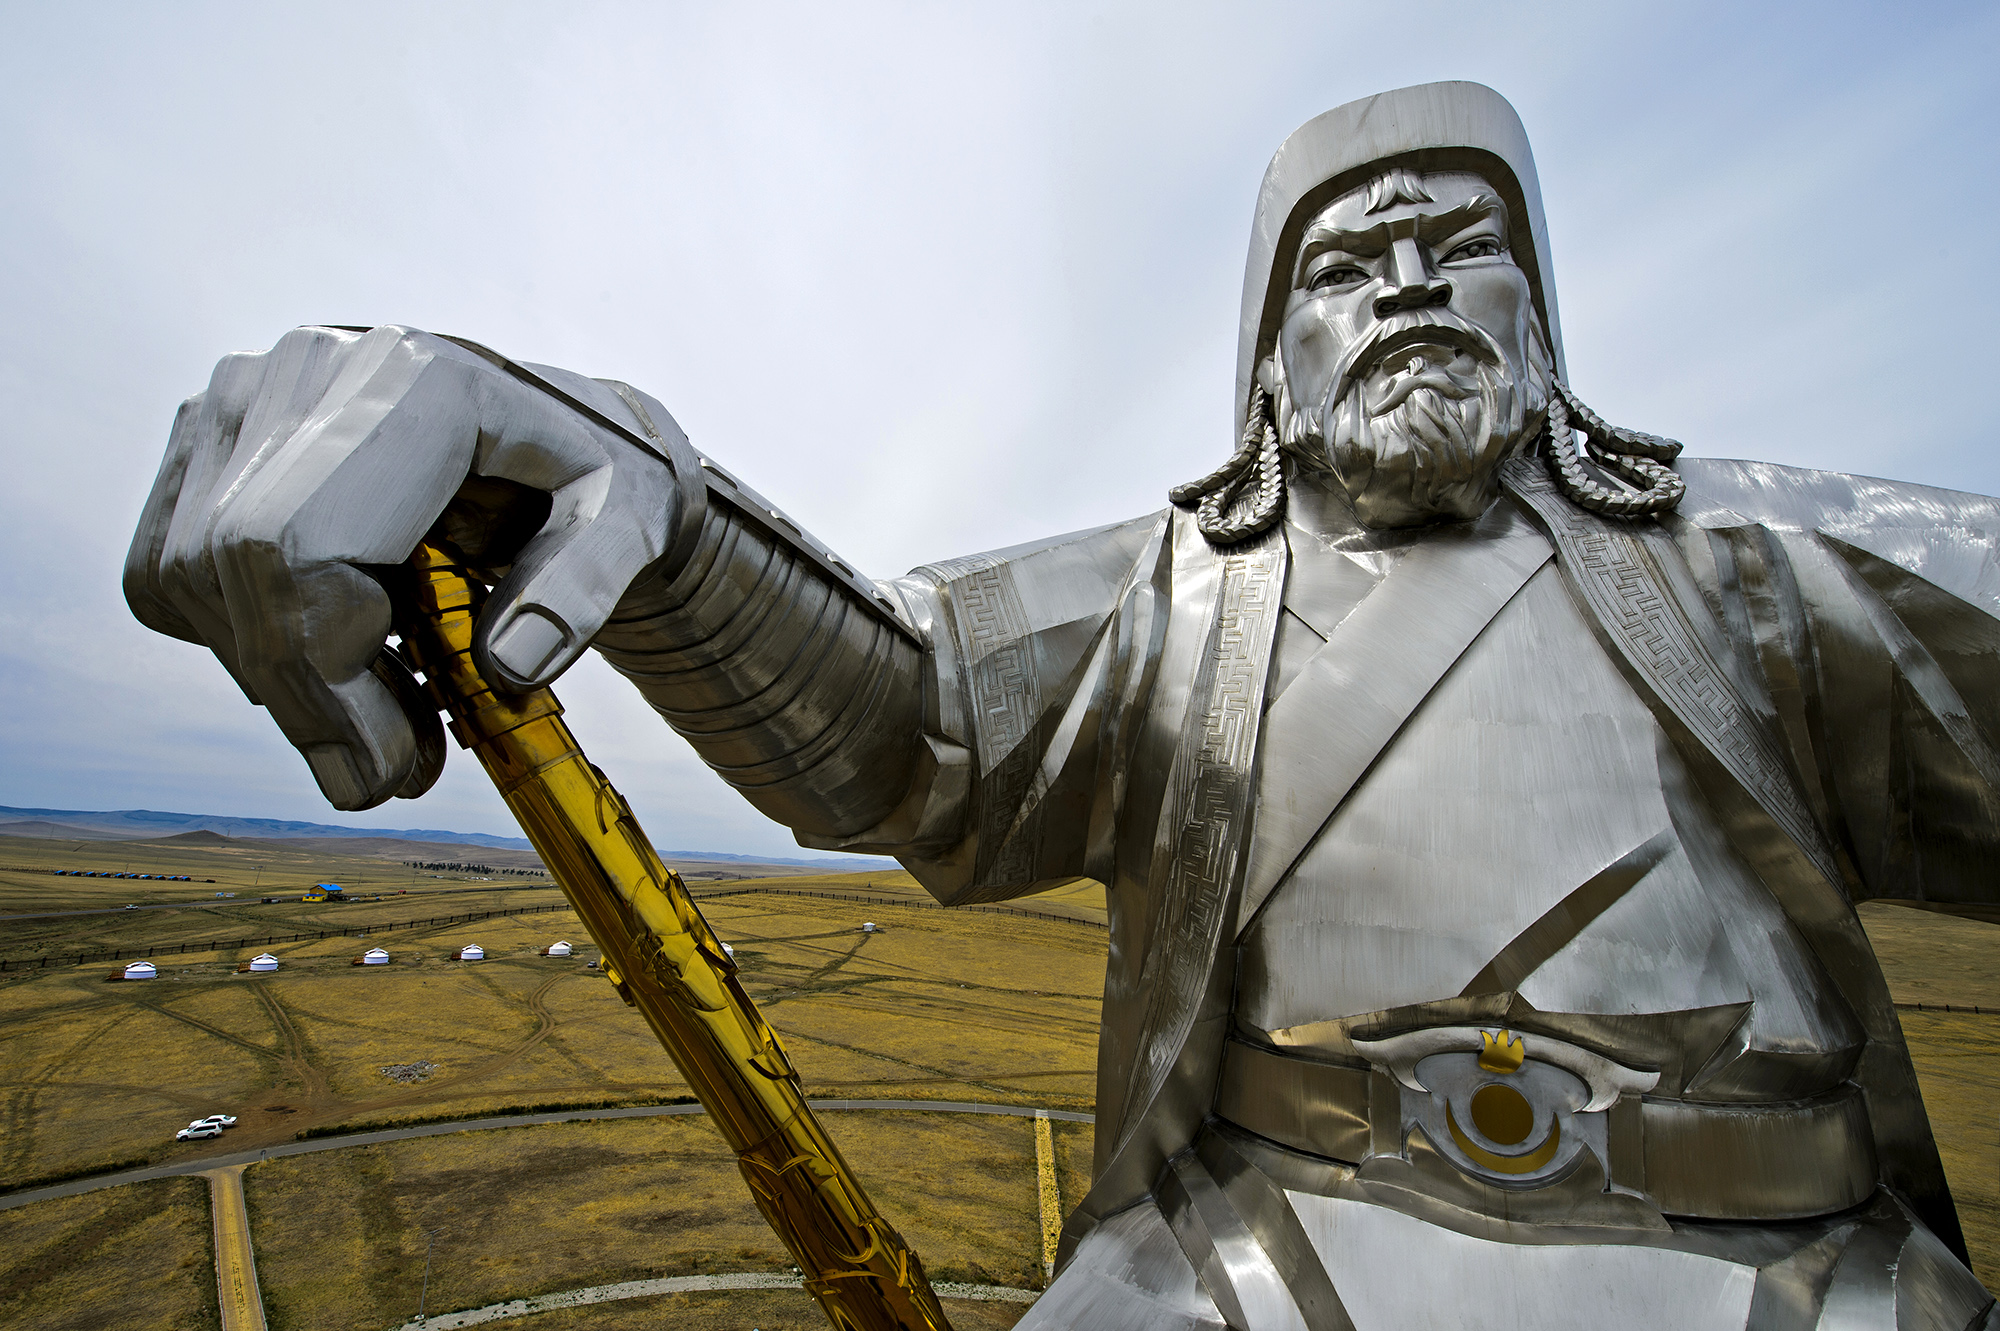 Nem hozza lázba a mongolokat a tatárjárás, amúgy is távoli rokonként tekintenek ránk